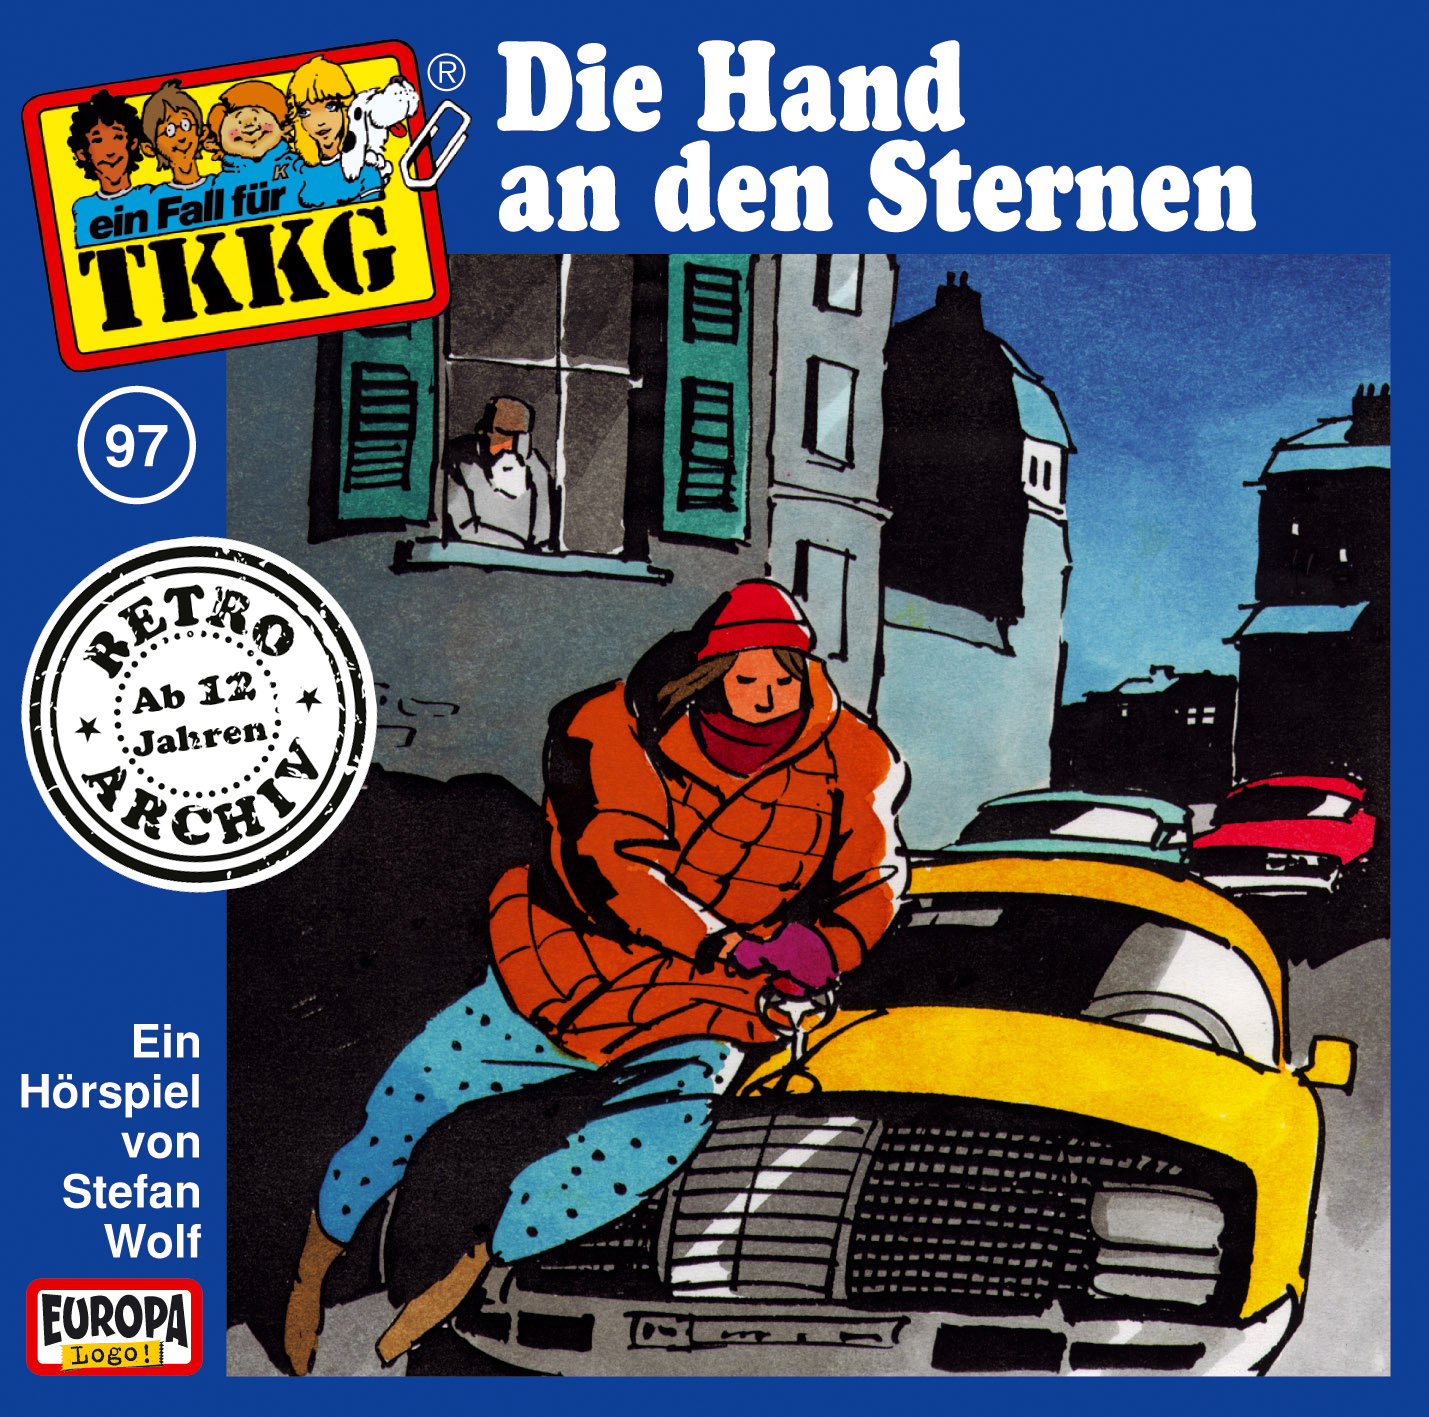 TKKG Retro-Archiv: Die Hand an den Sternen